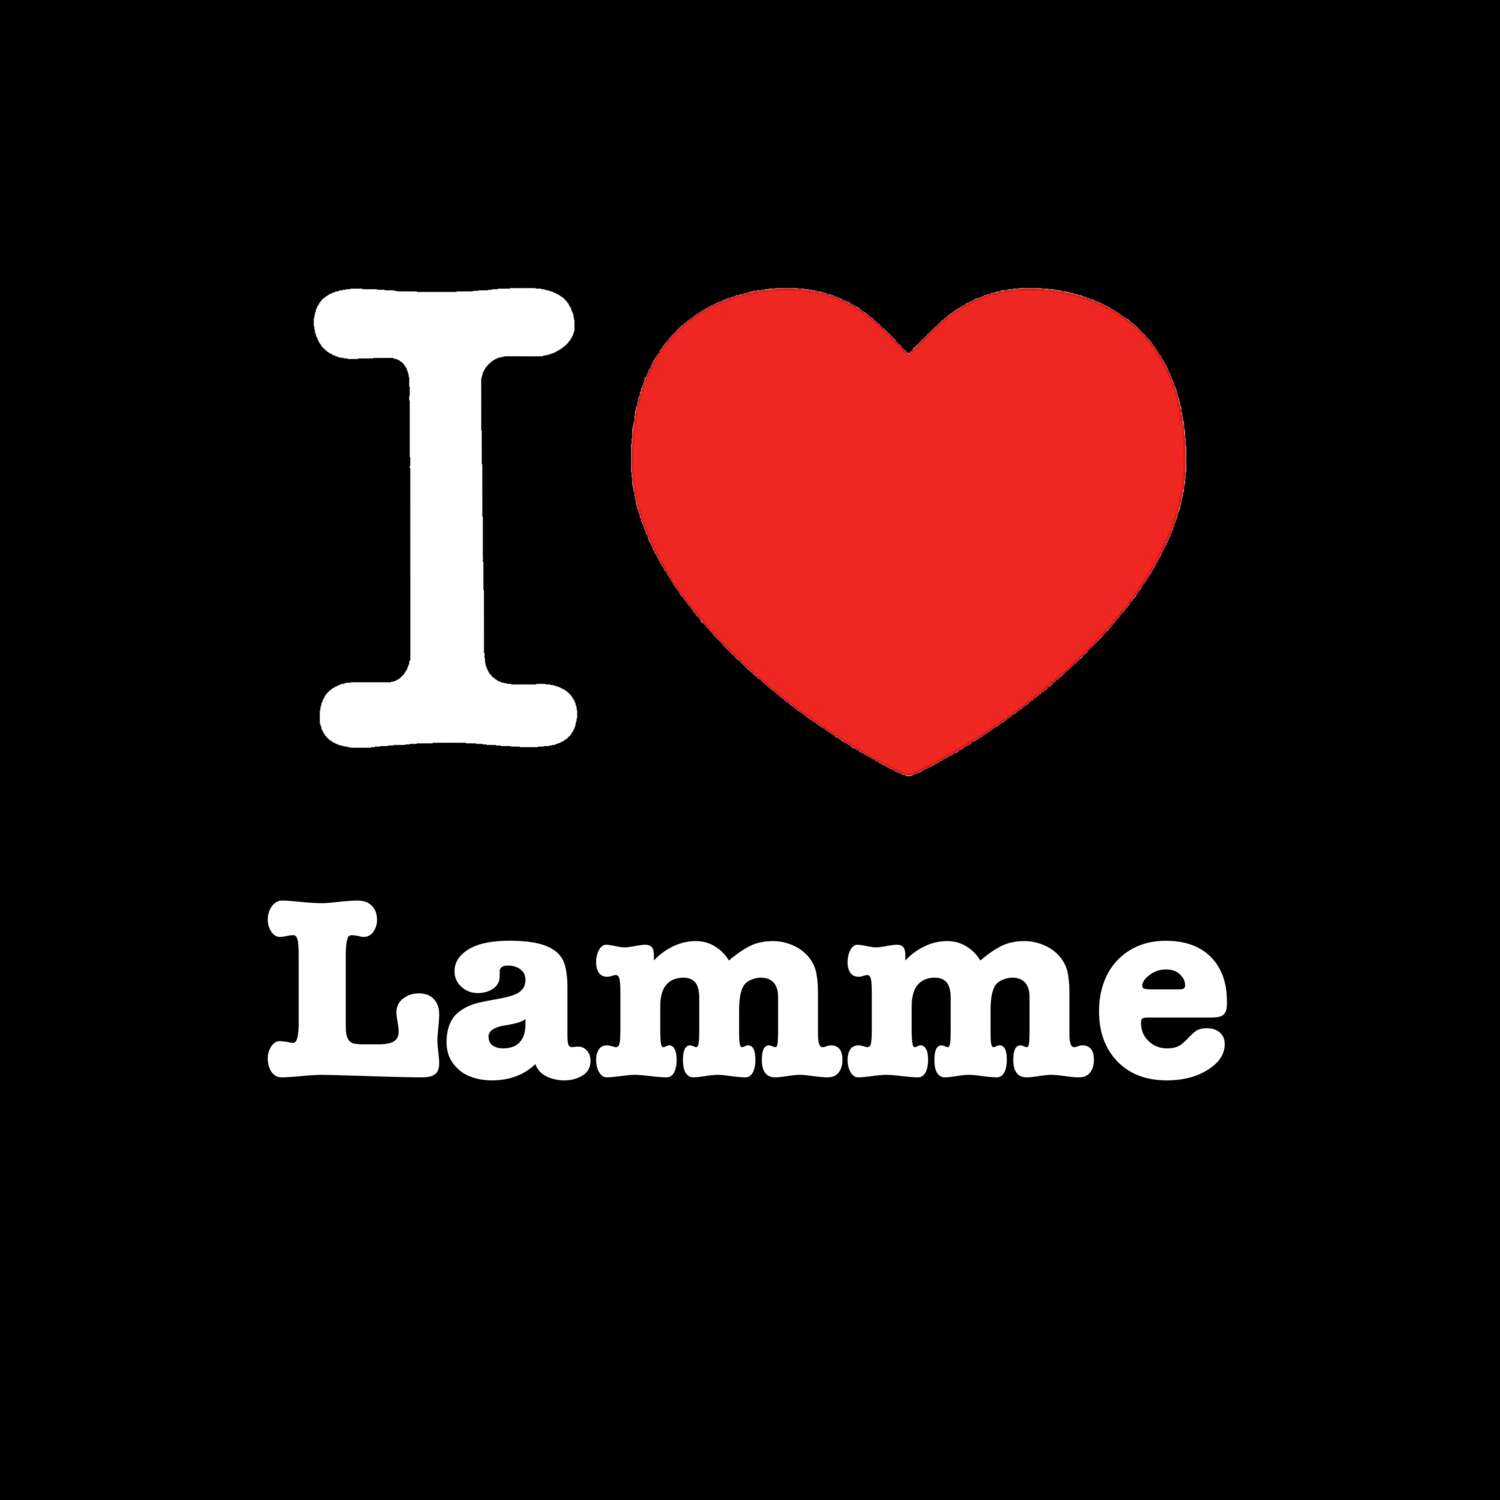 Lamme T-Shirt »I love«